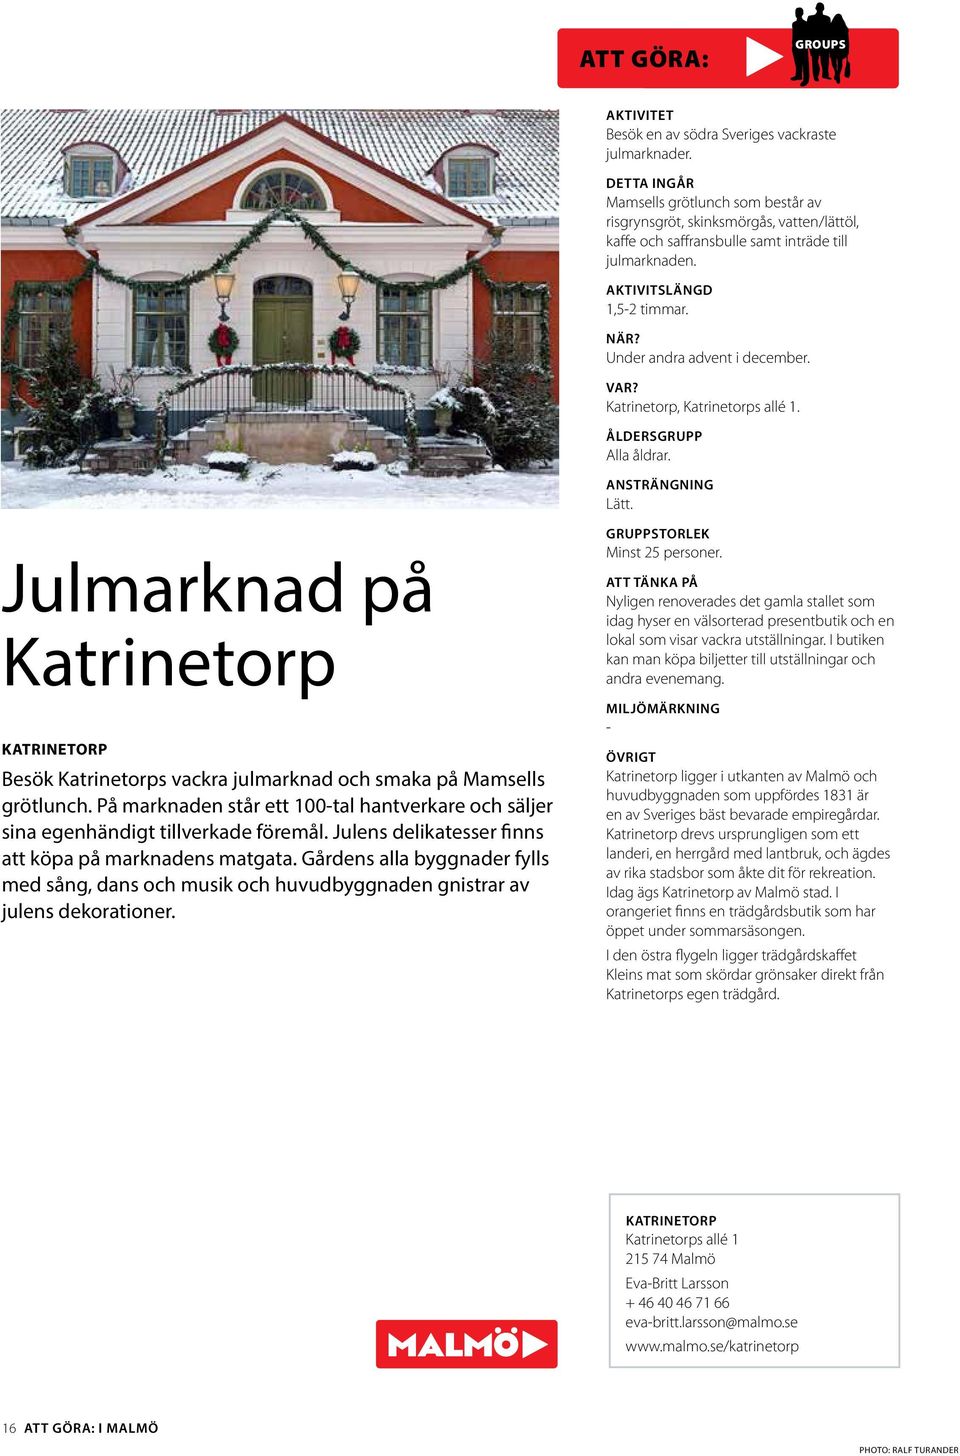 Julmarknad på Katrinetorp KATRINETORP Besök Katrinetorps vackra julmarknad och smaka på Mamsells grötlunch. På marknaden står ett 100-tal hantverkare och säljer sina egenhändigt tillverkade föremål.